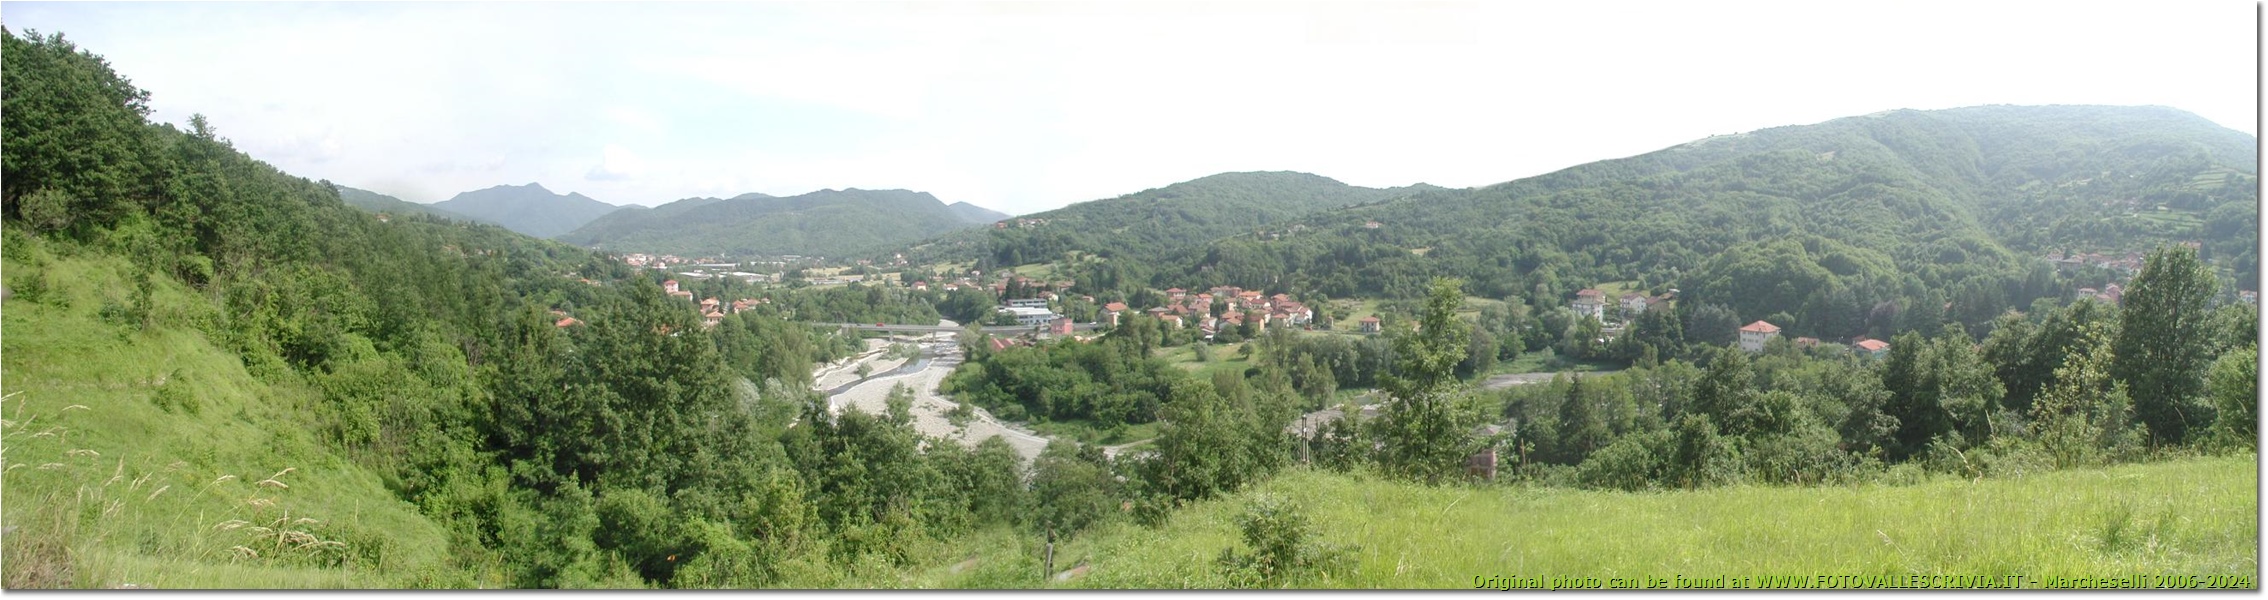 Besolagno e il ponte di Stabbio - Savignone - <2001 - Panorami - Estate - Olympus Camedia 3000